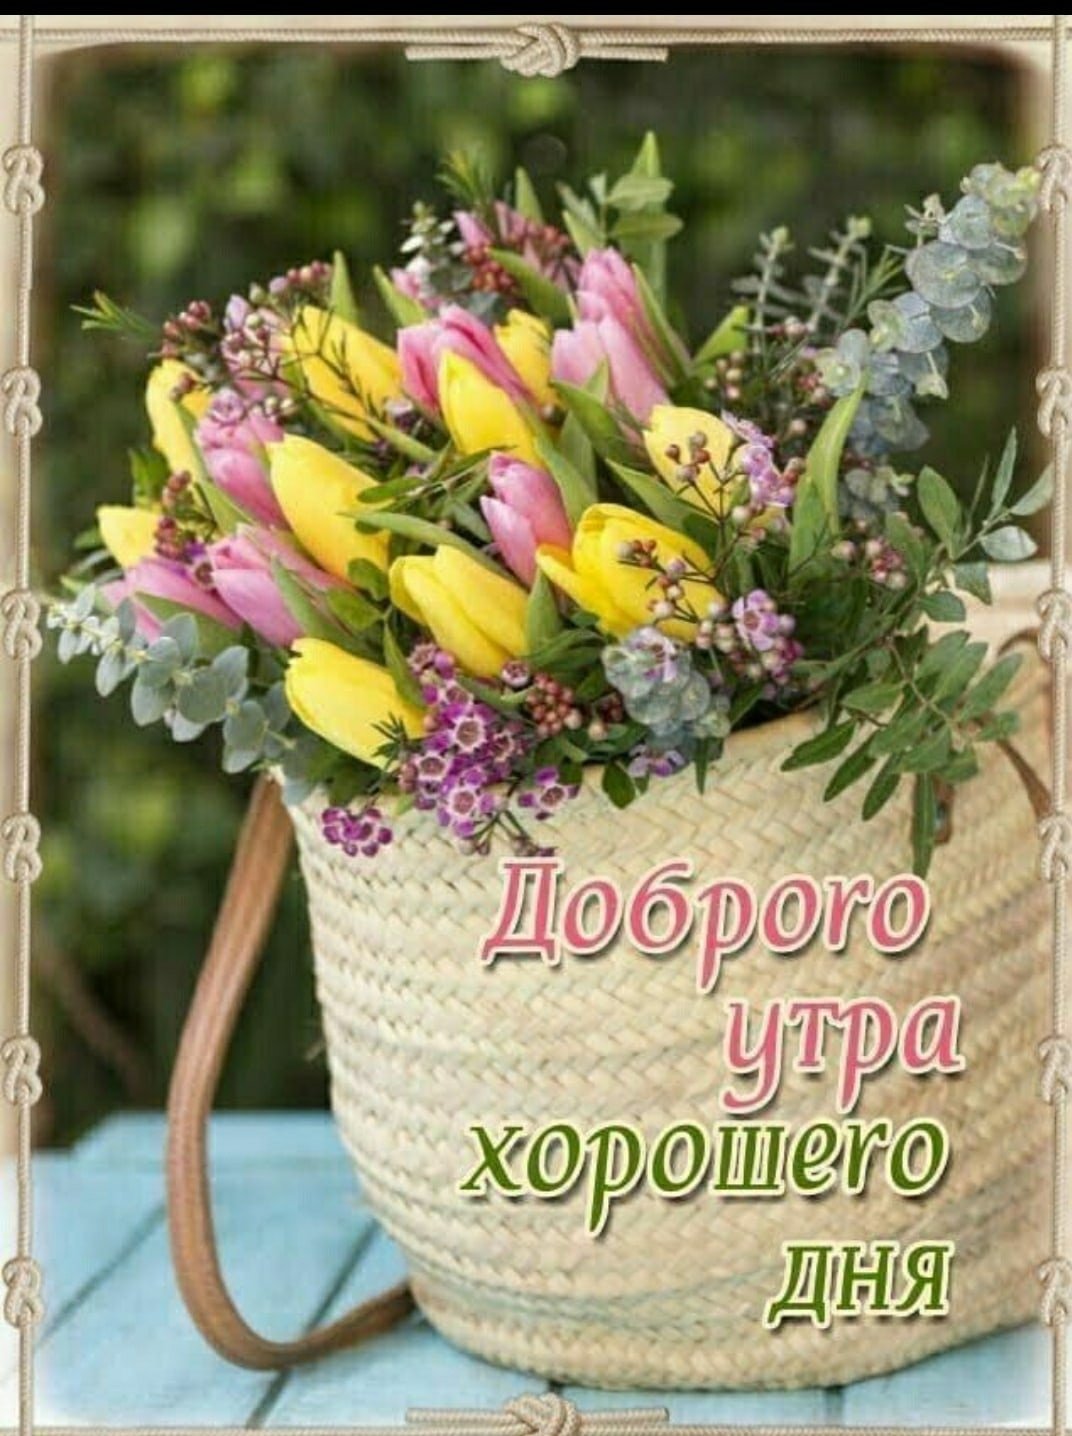 Доброе утро с пожеланиями здоровья весной. Доброго утра и хорошего дня цветы. Хорошего светлого дня. Прекрасного дня и отличного настроения. Хорошего дня и отличного настроения.